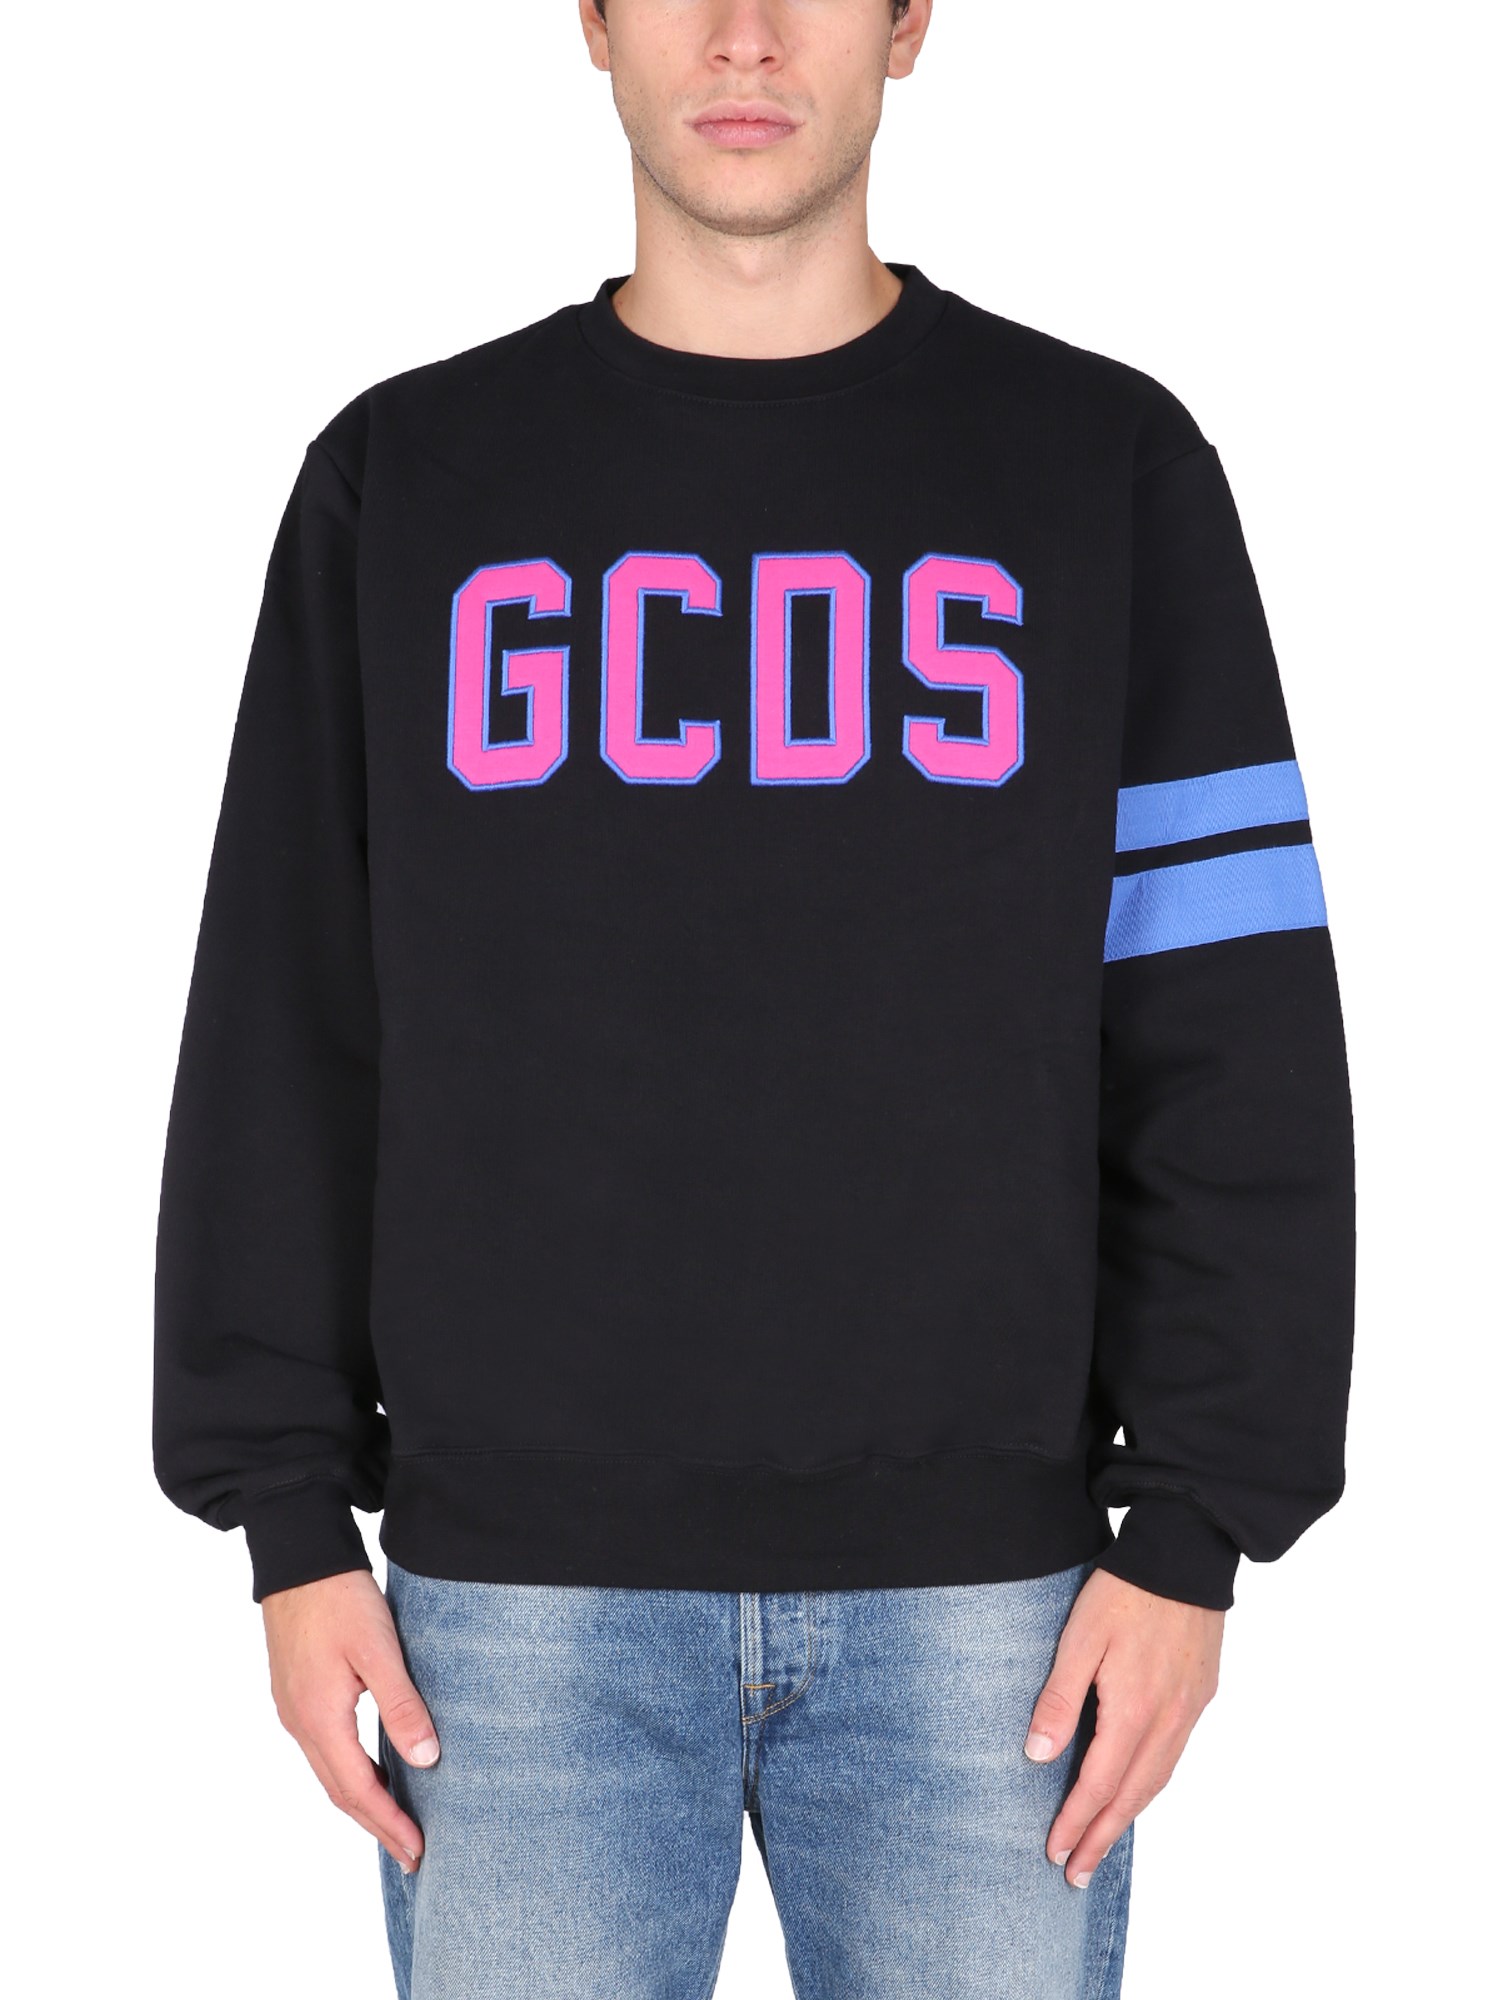 gcds logo embroidered cotton sweatshirt